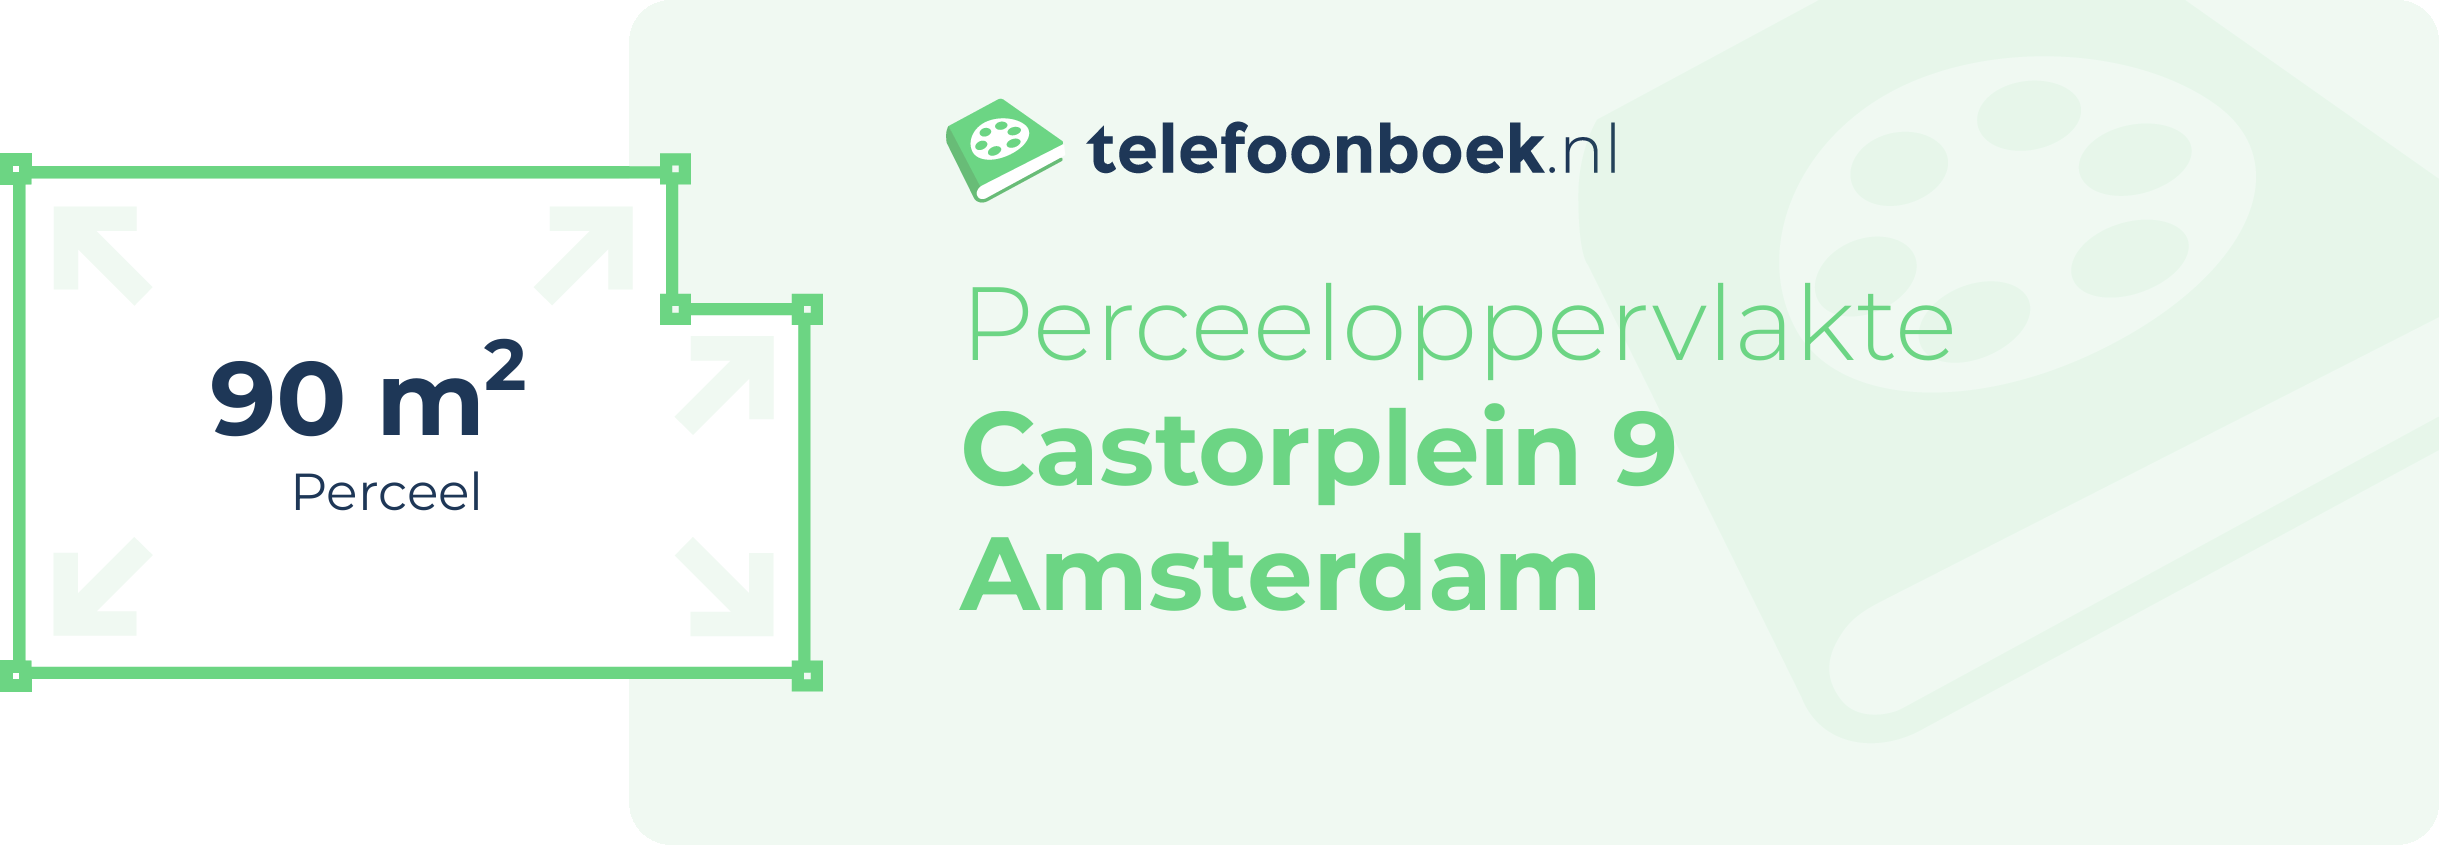 Perceeloppervlakte Castorplein 9 Amsterdam